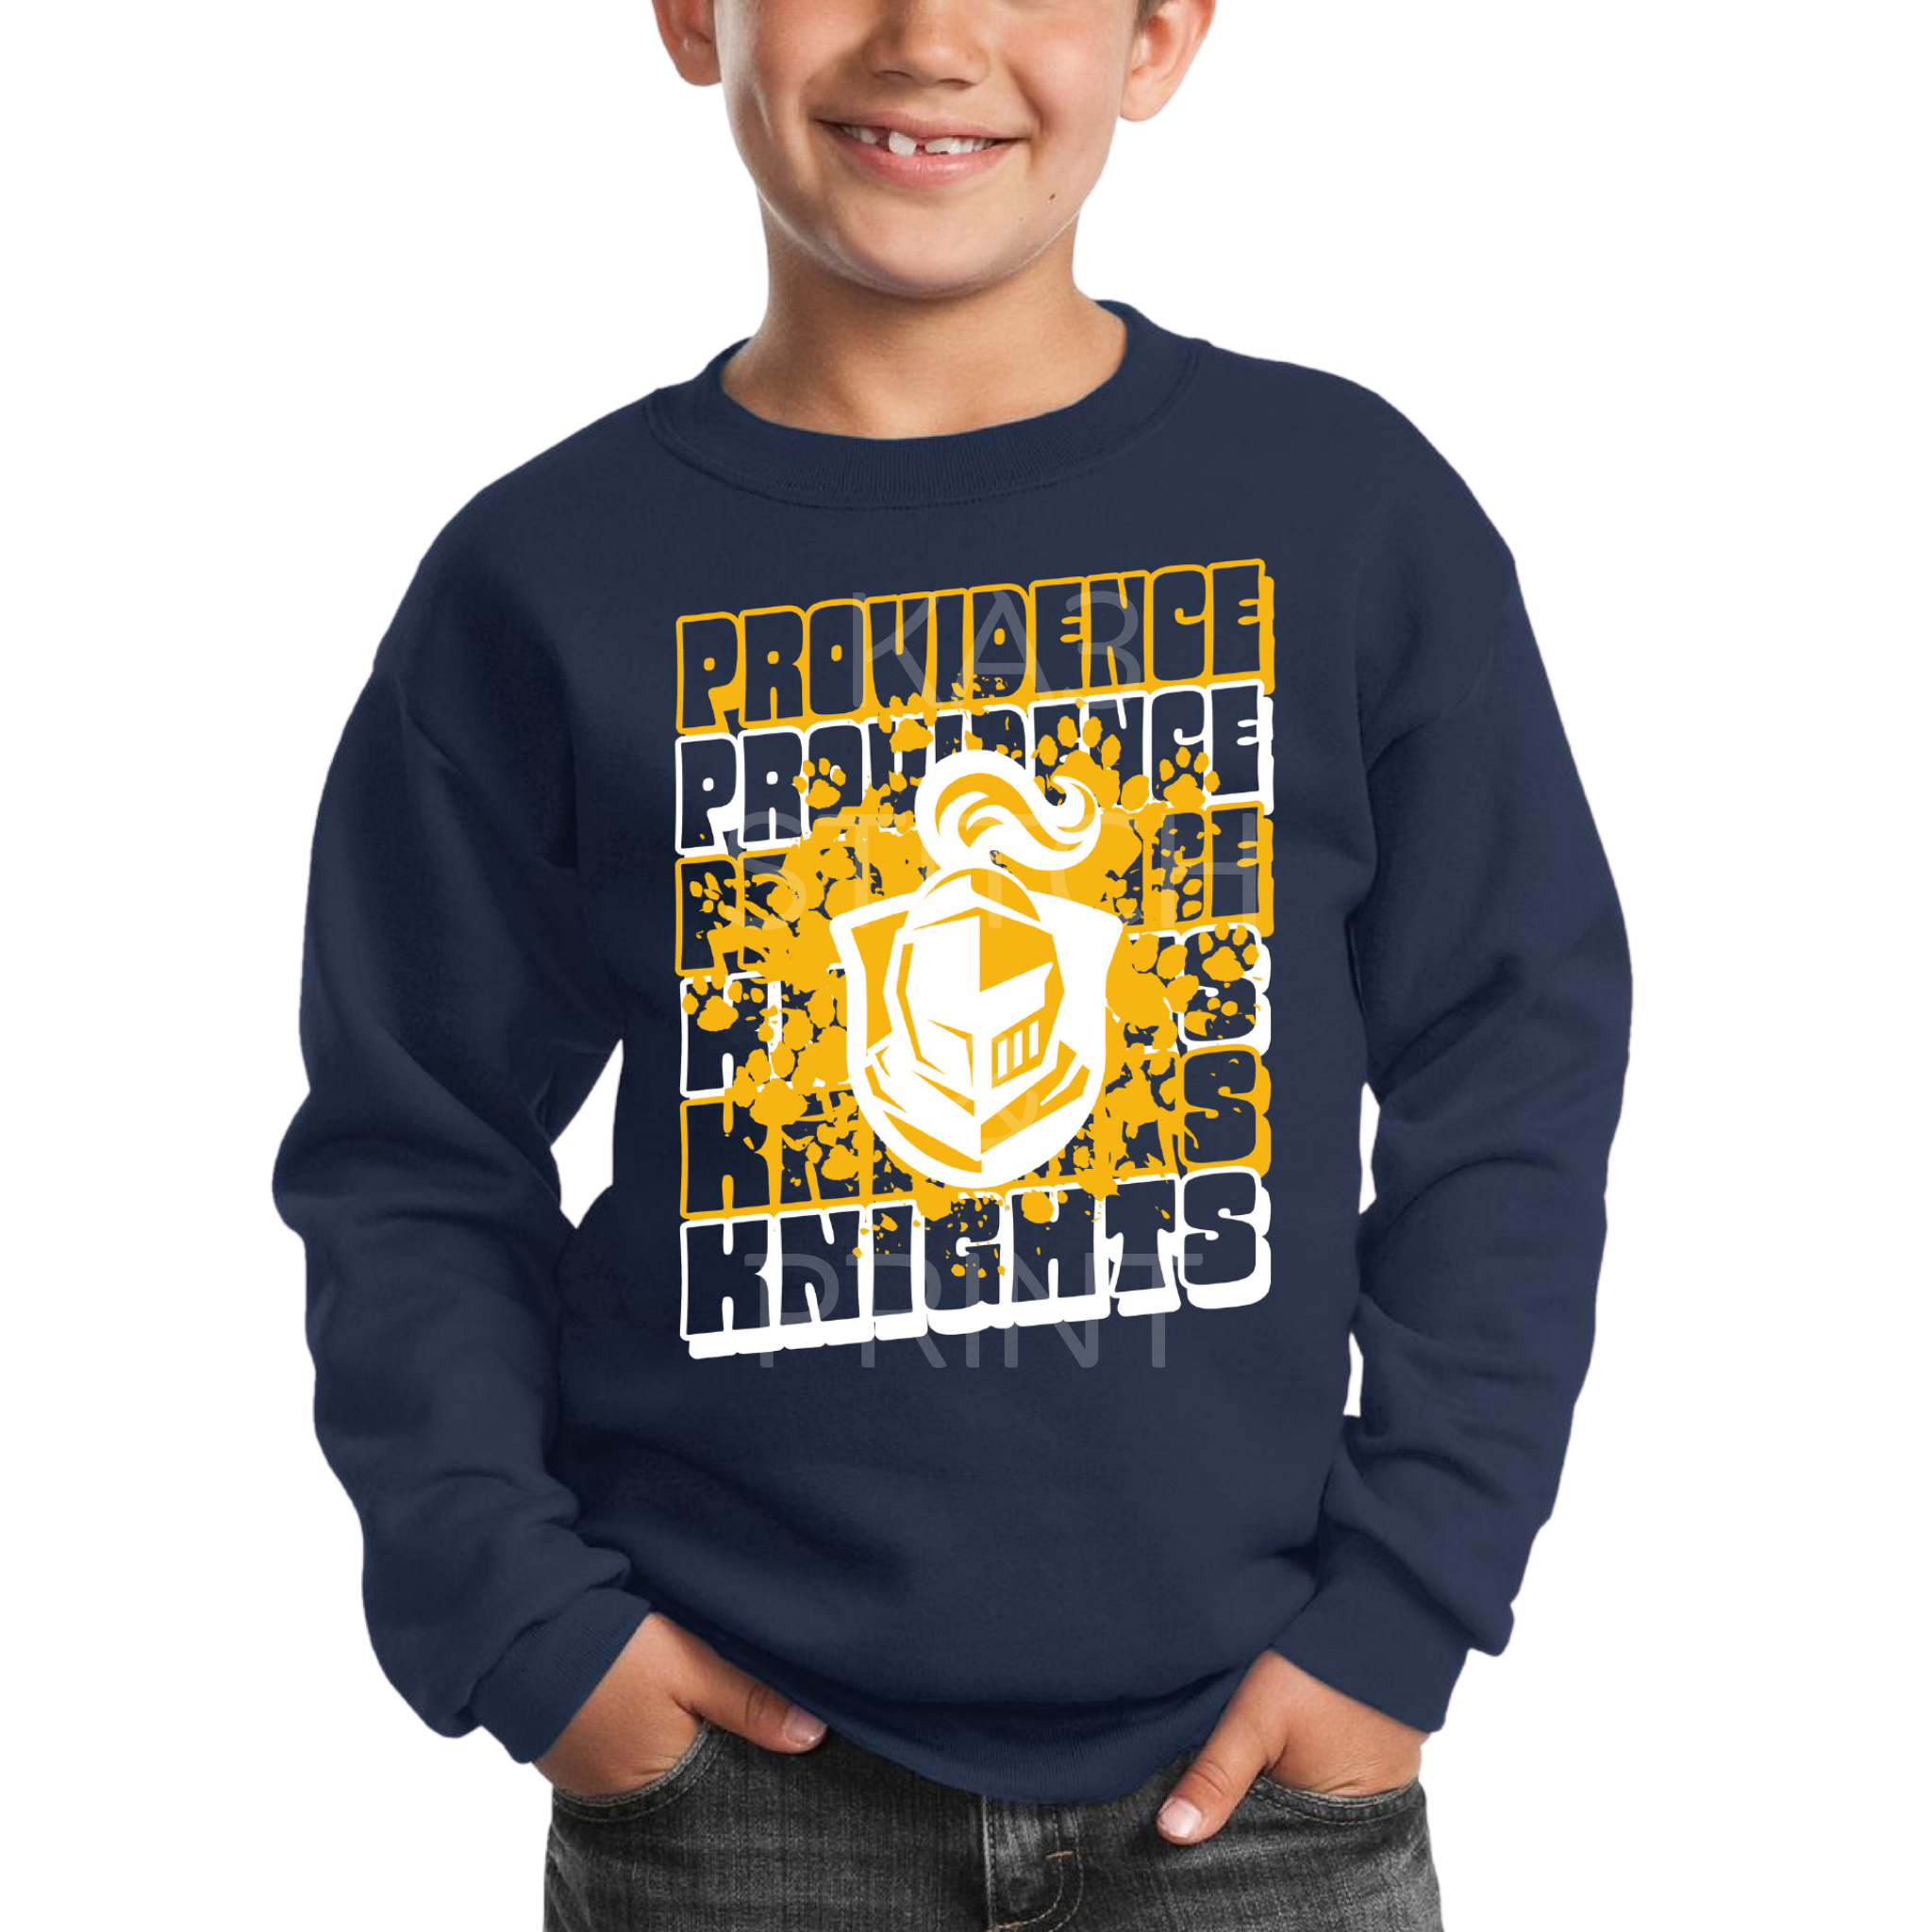 Retro Providence Knights